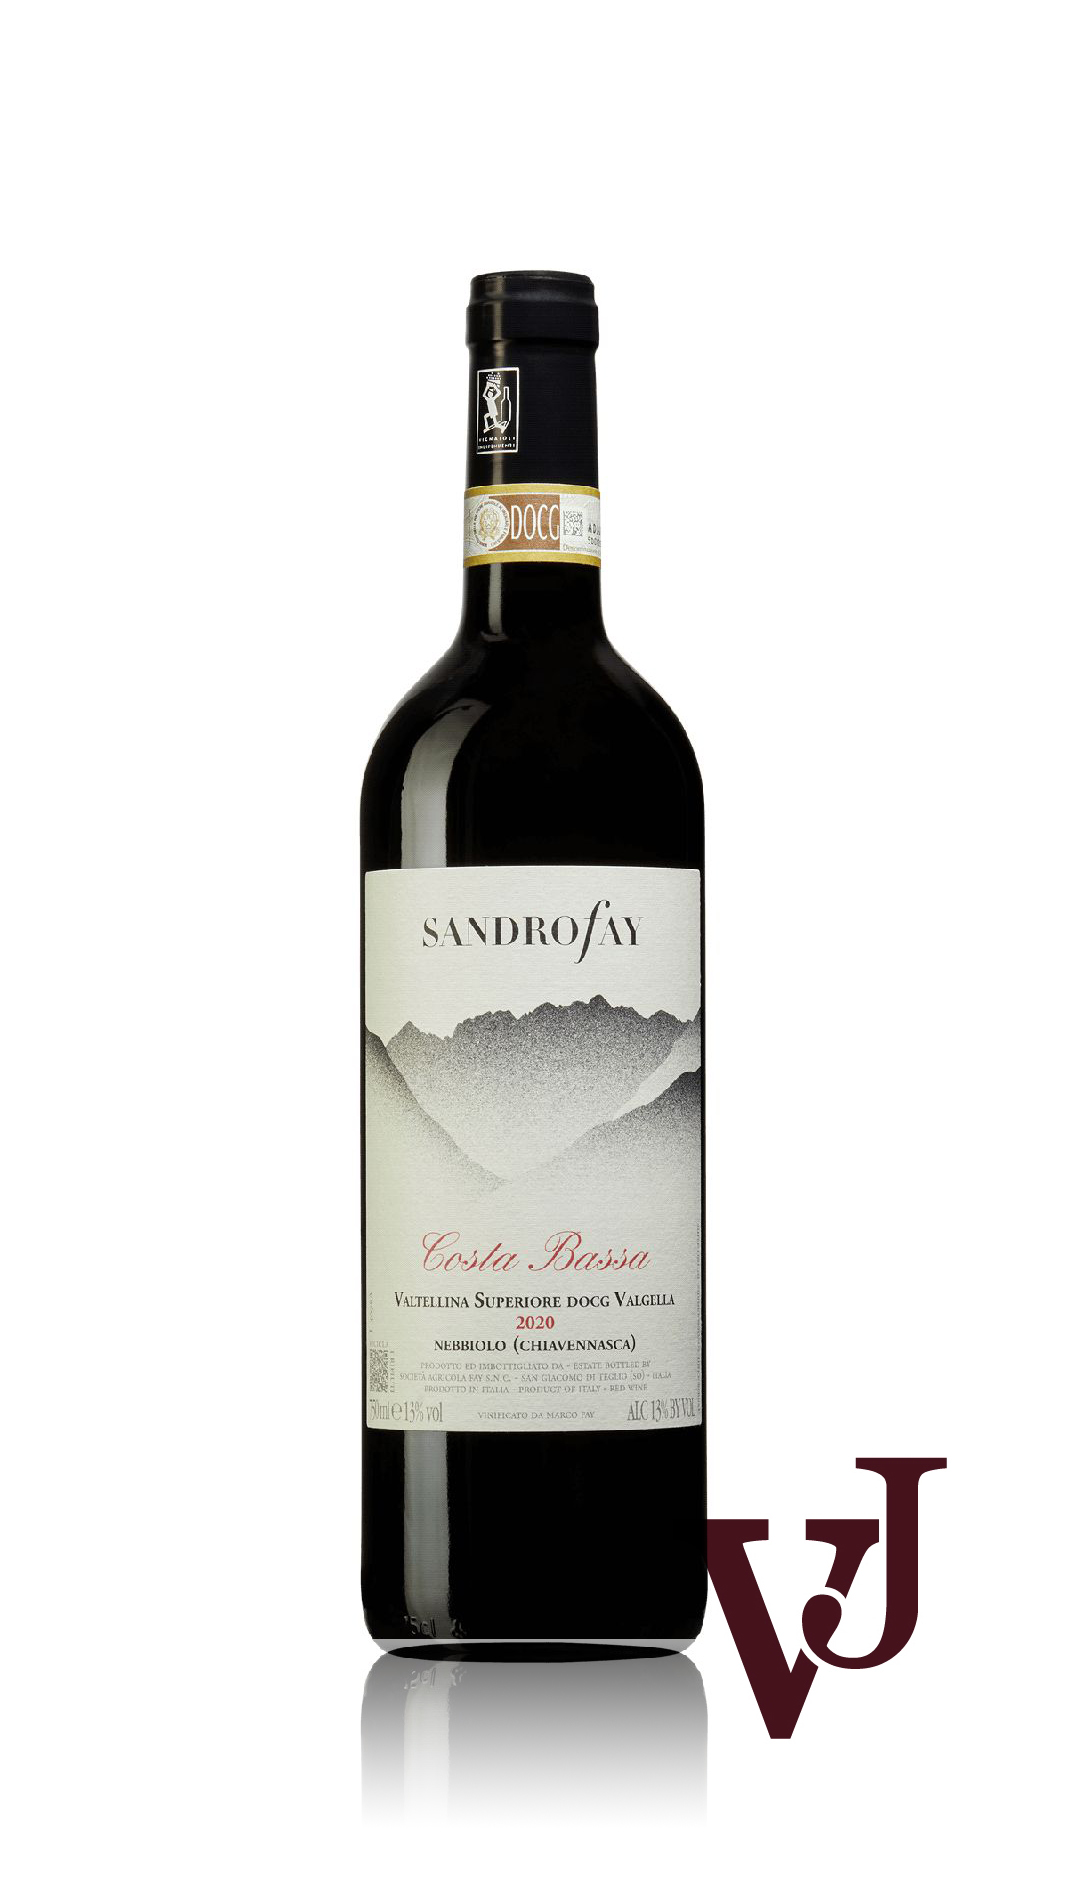 Rött Vin - Costa Bassa Valtellina Superiore 2020 artikel nummer 9270101 från producenten Sandro Fay från Italien